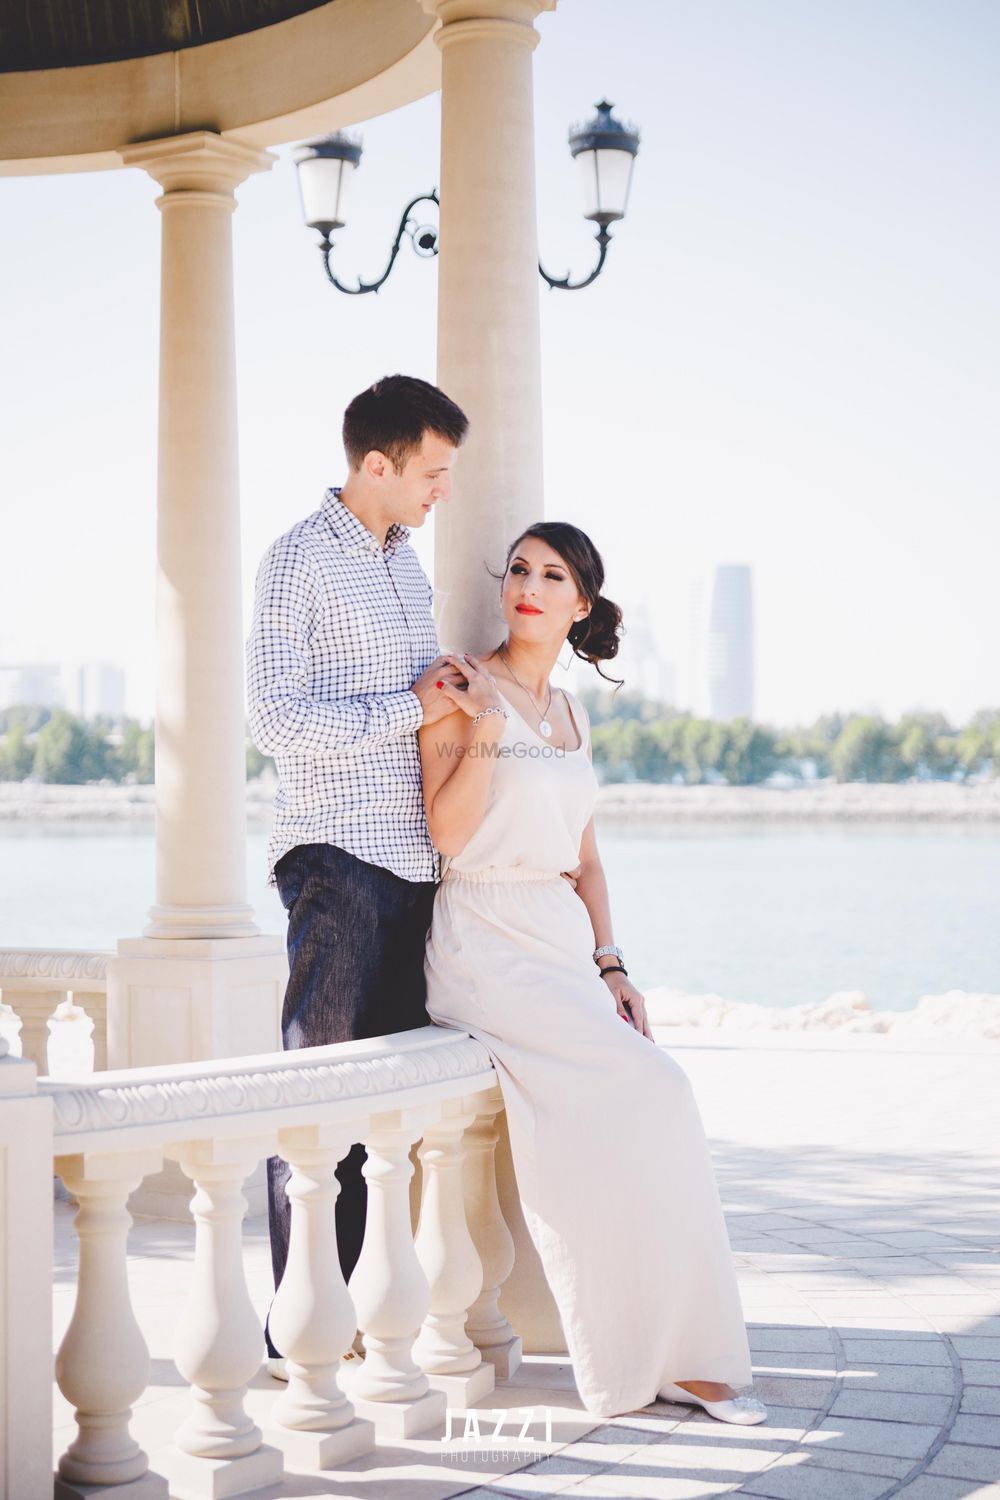 Photo From Emilija+Milosh Pre Wedding - By Jazzi Photography